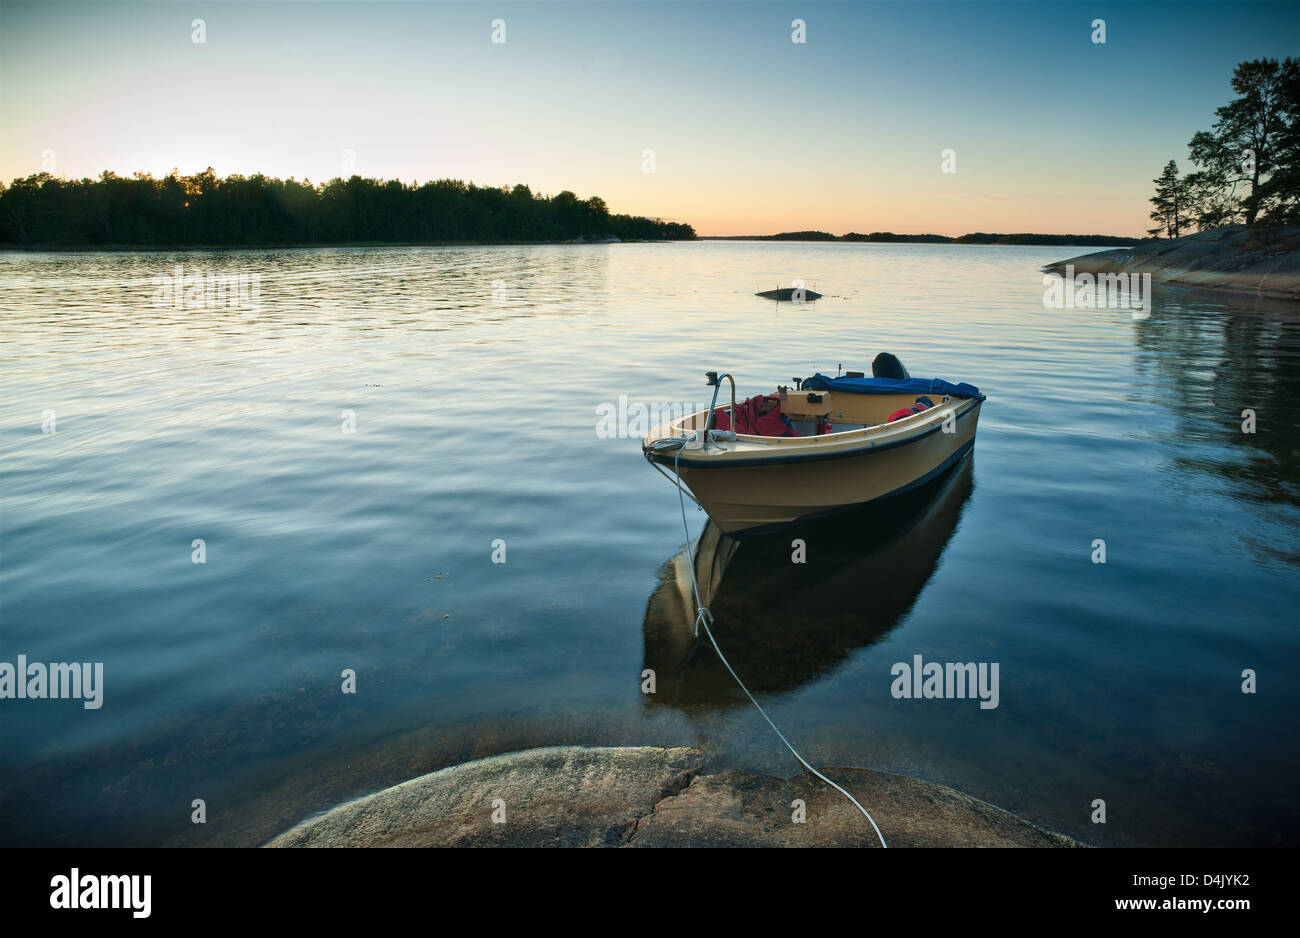 Boat docked in still lake Stock Photo